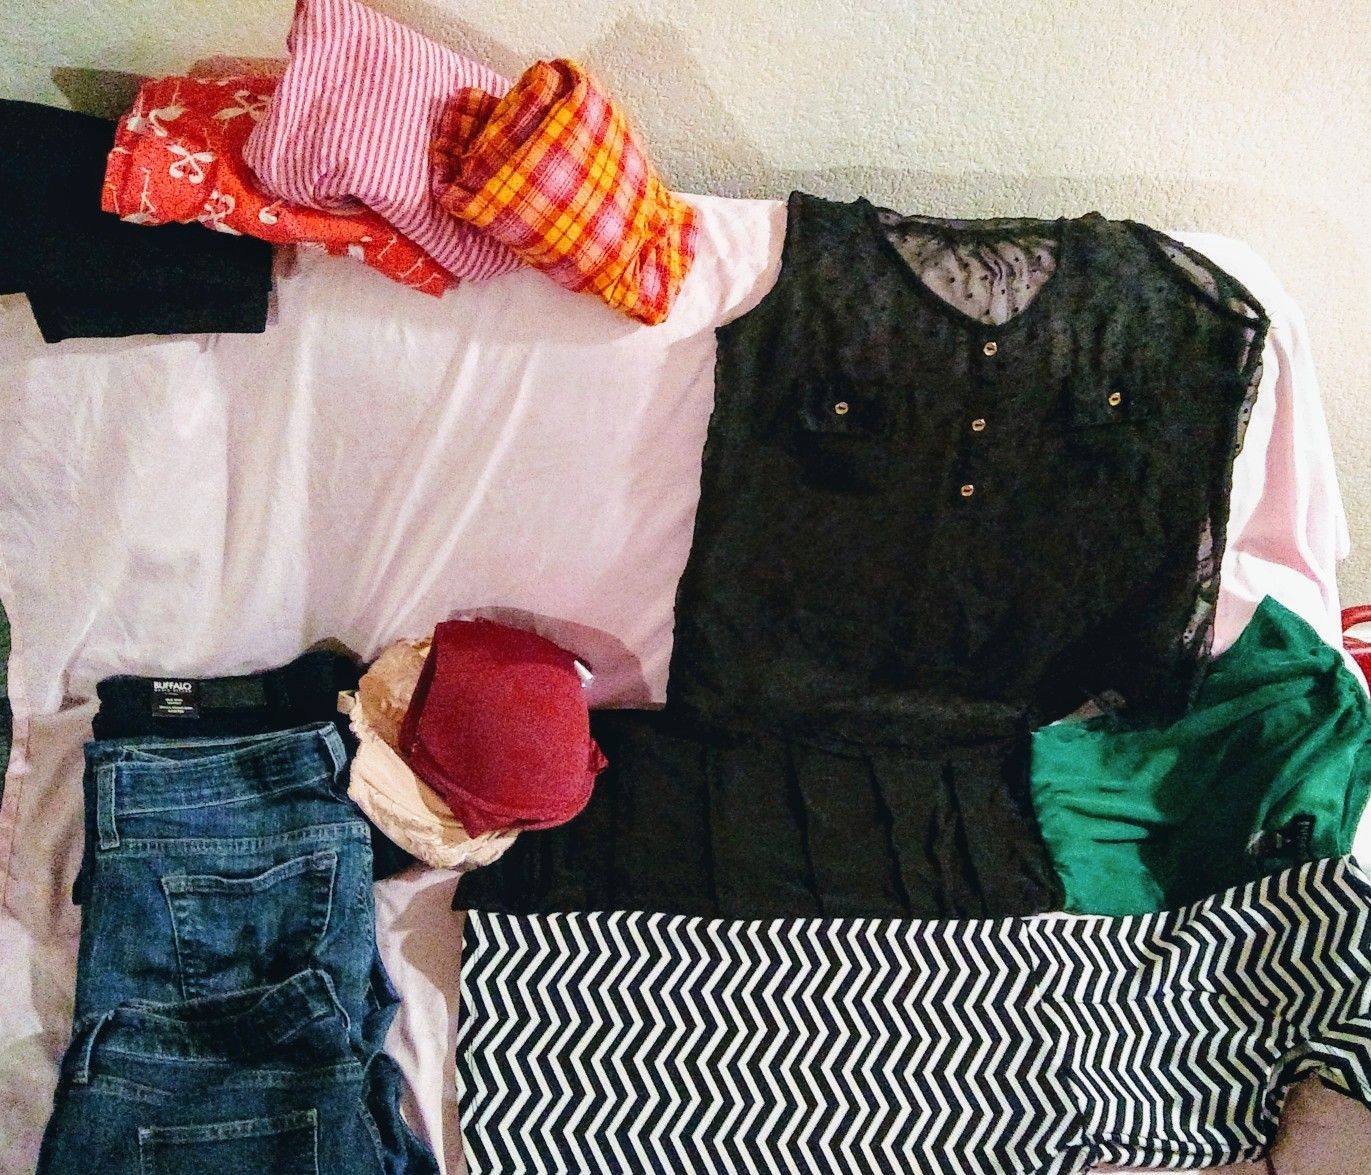 Women's clothes bundle $8